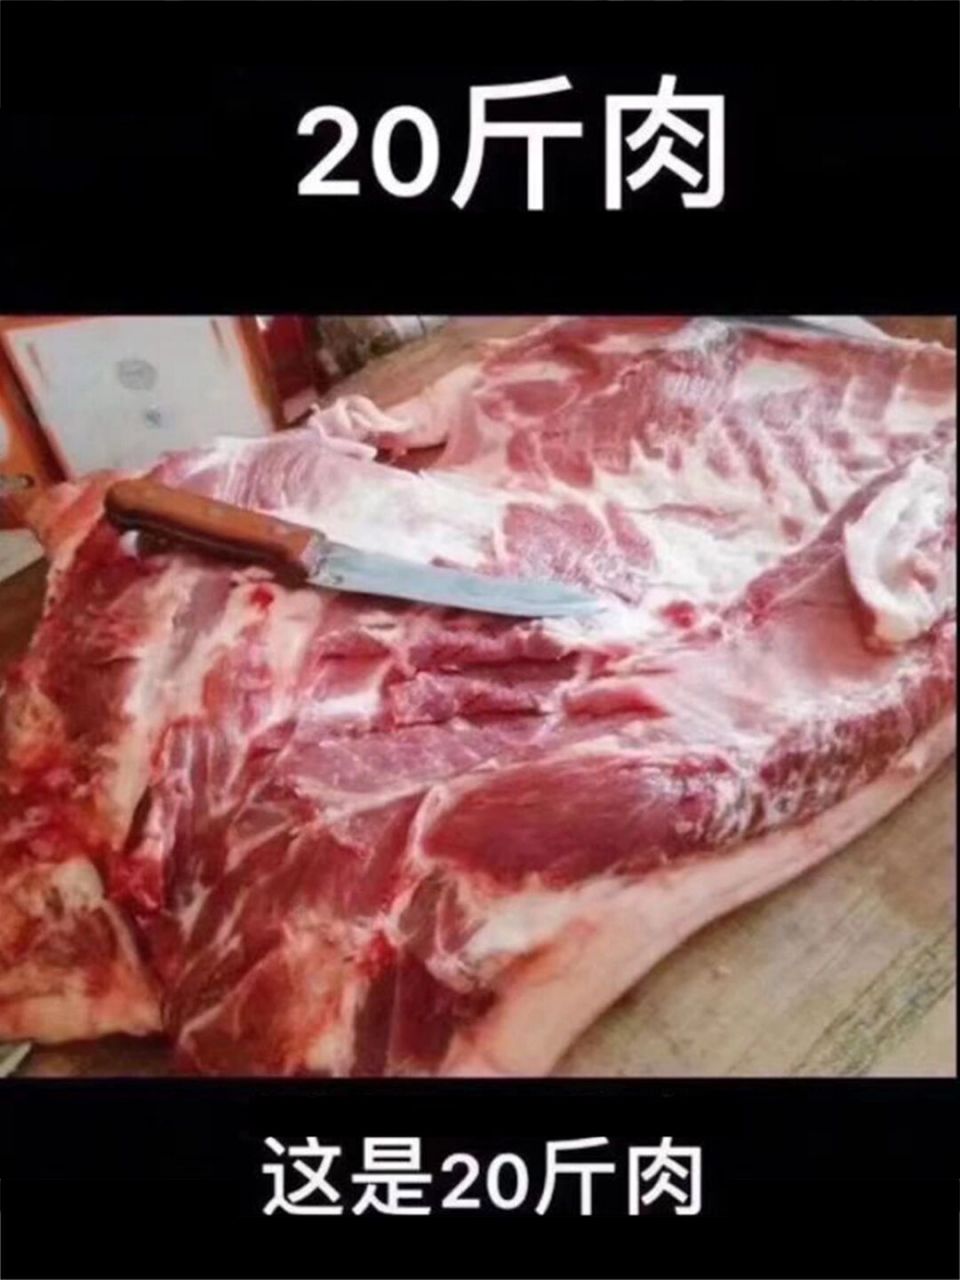 20斤肉是多大一坨照片图片